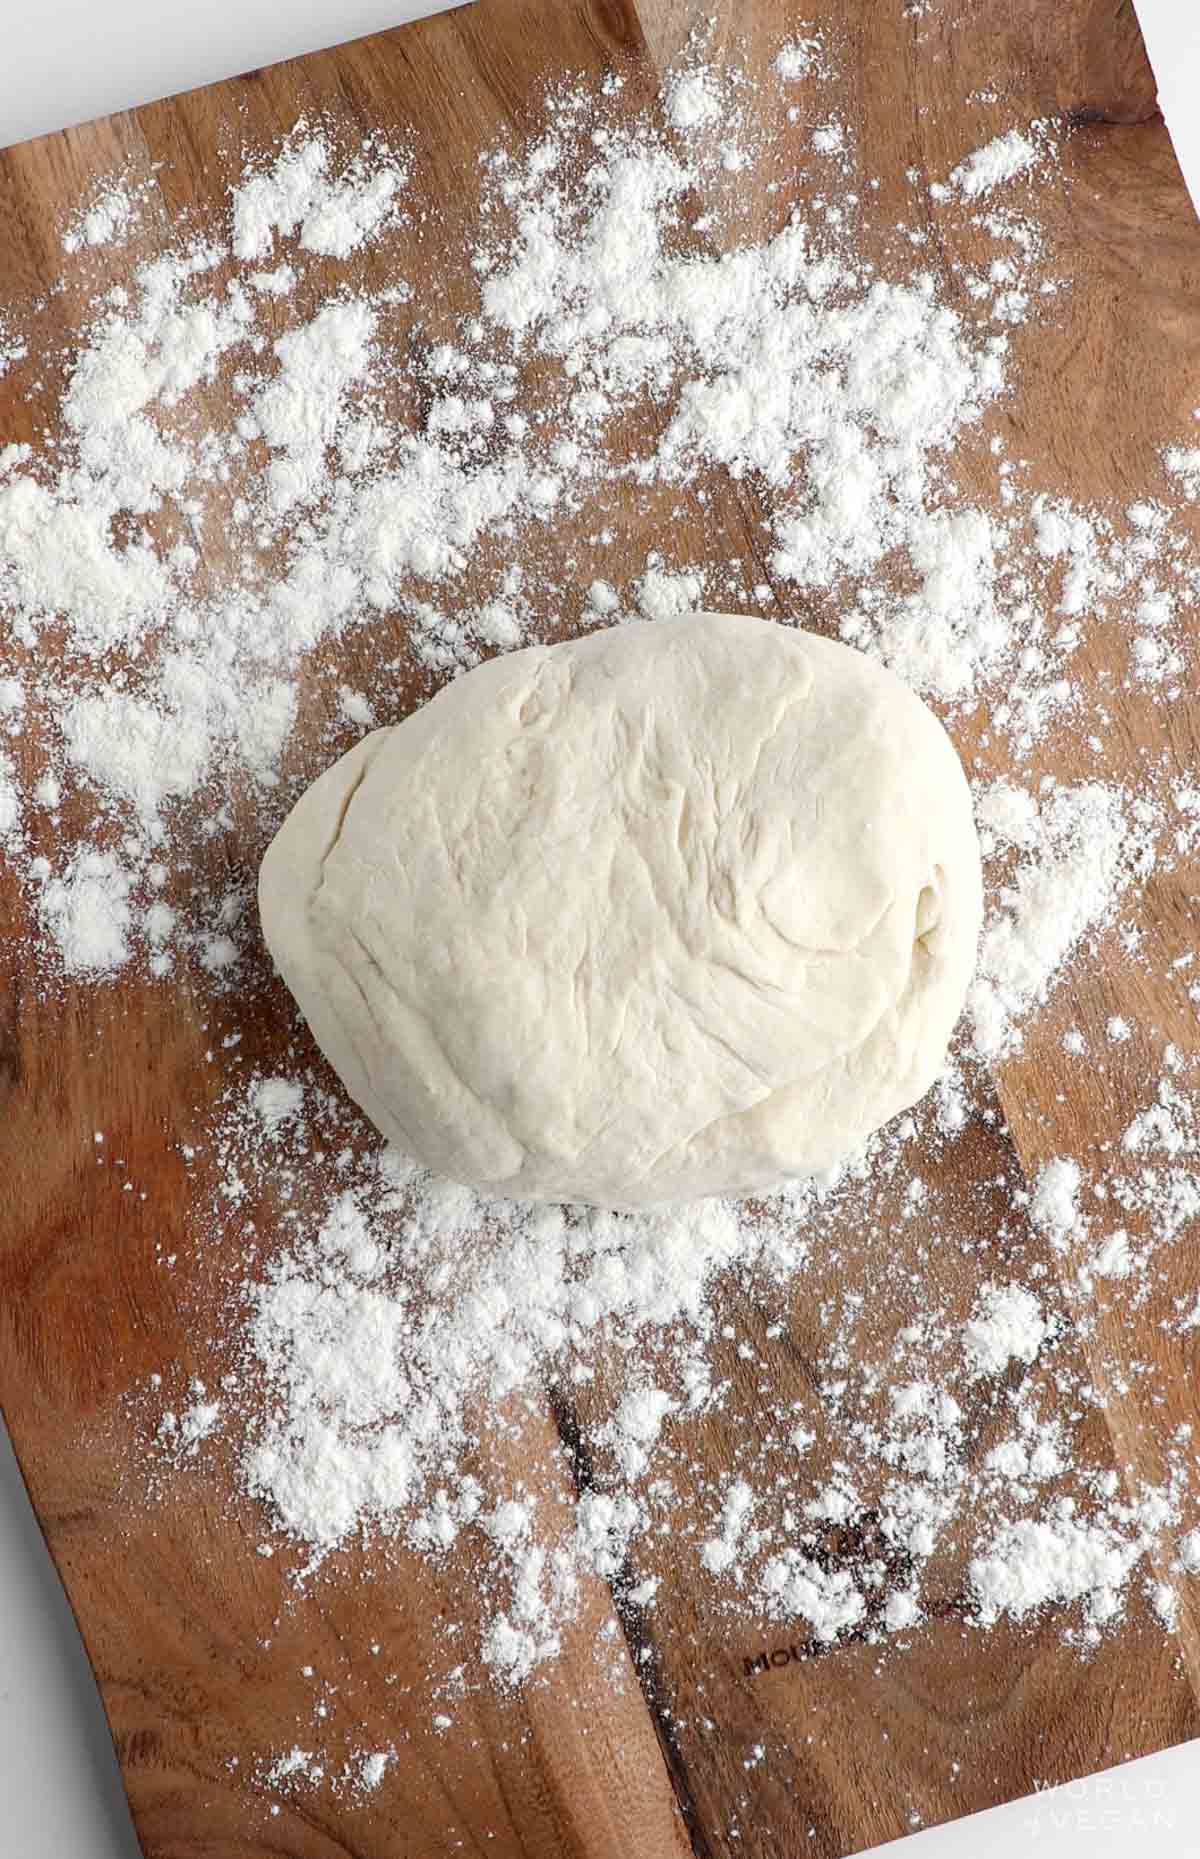 Vegan pizza dough on a floured surface.